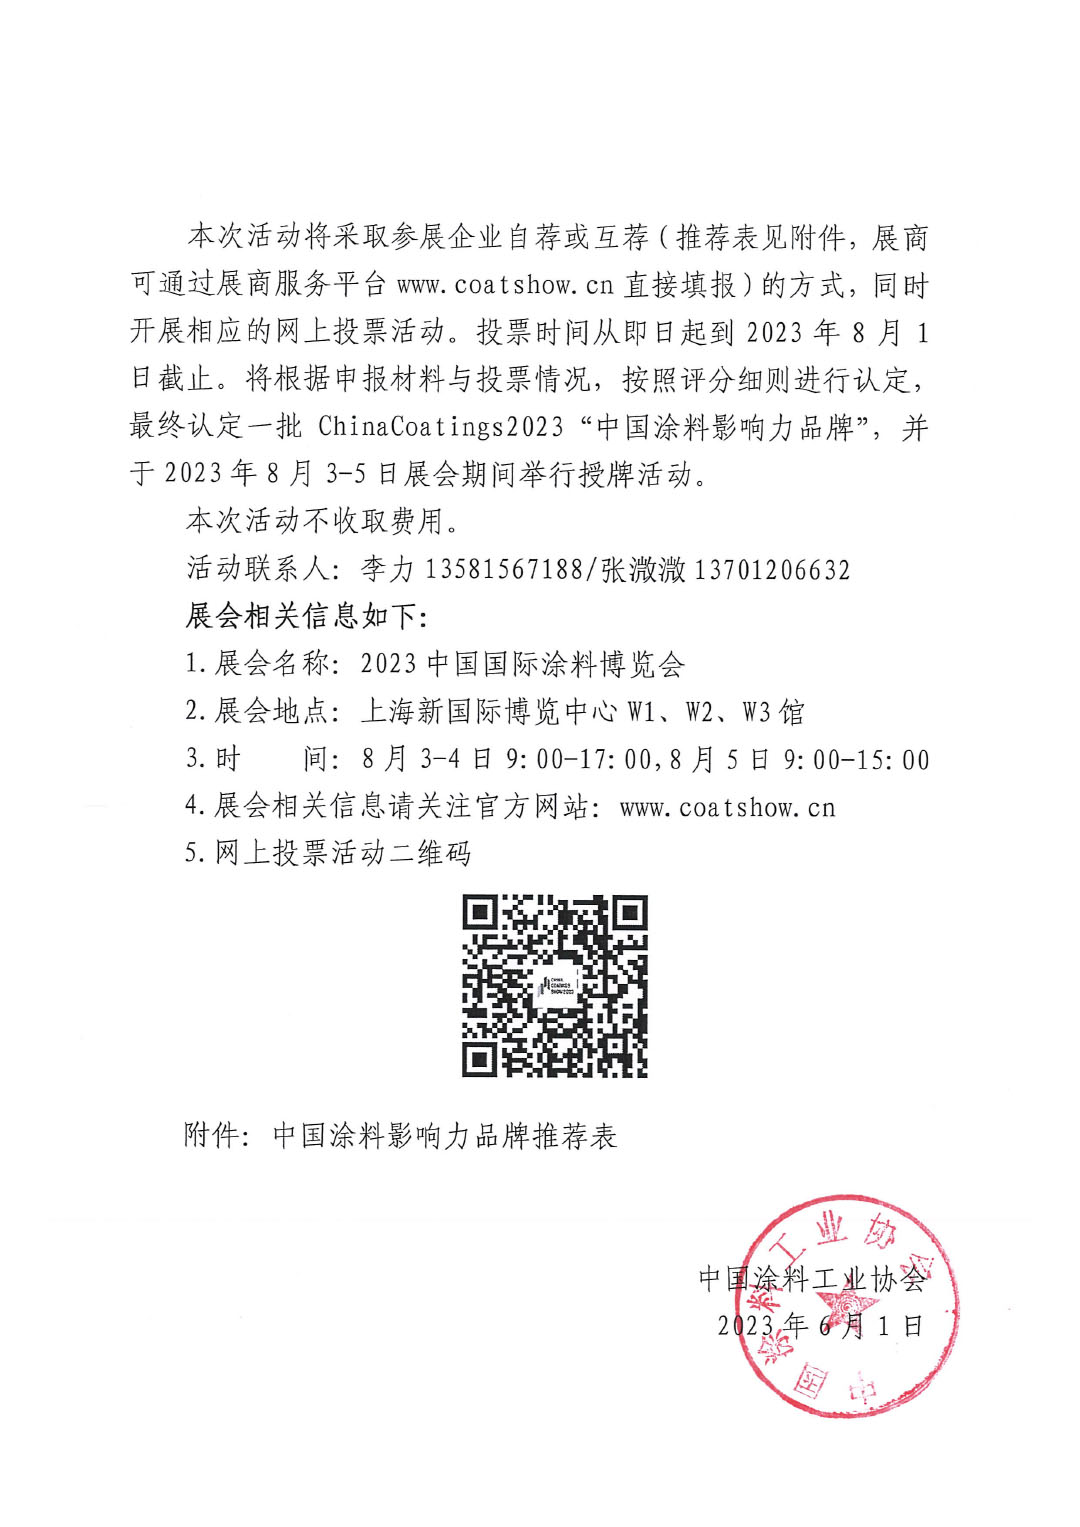 关于举办ChinaCoatings2023“中国涂料影响力品牌”推介活动的通知-2